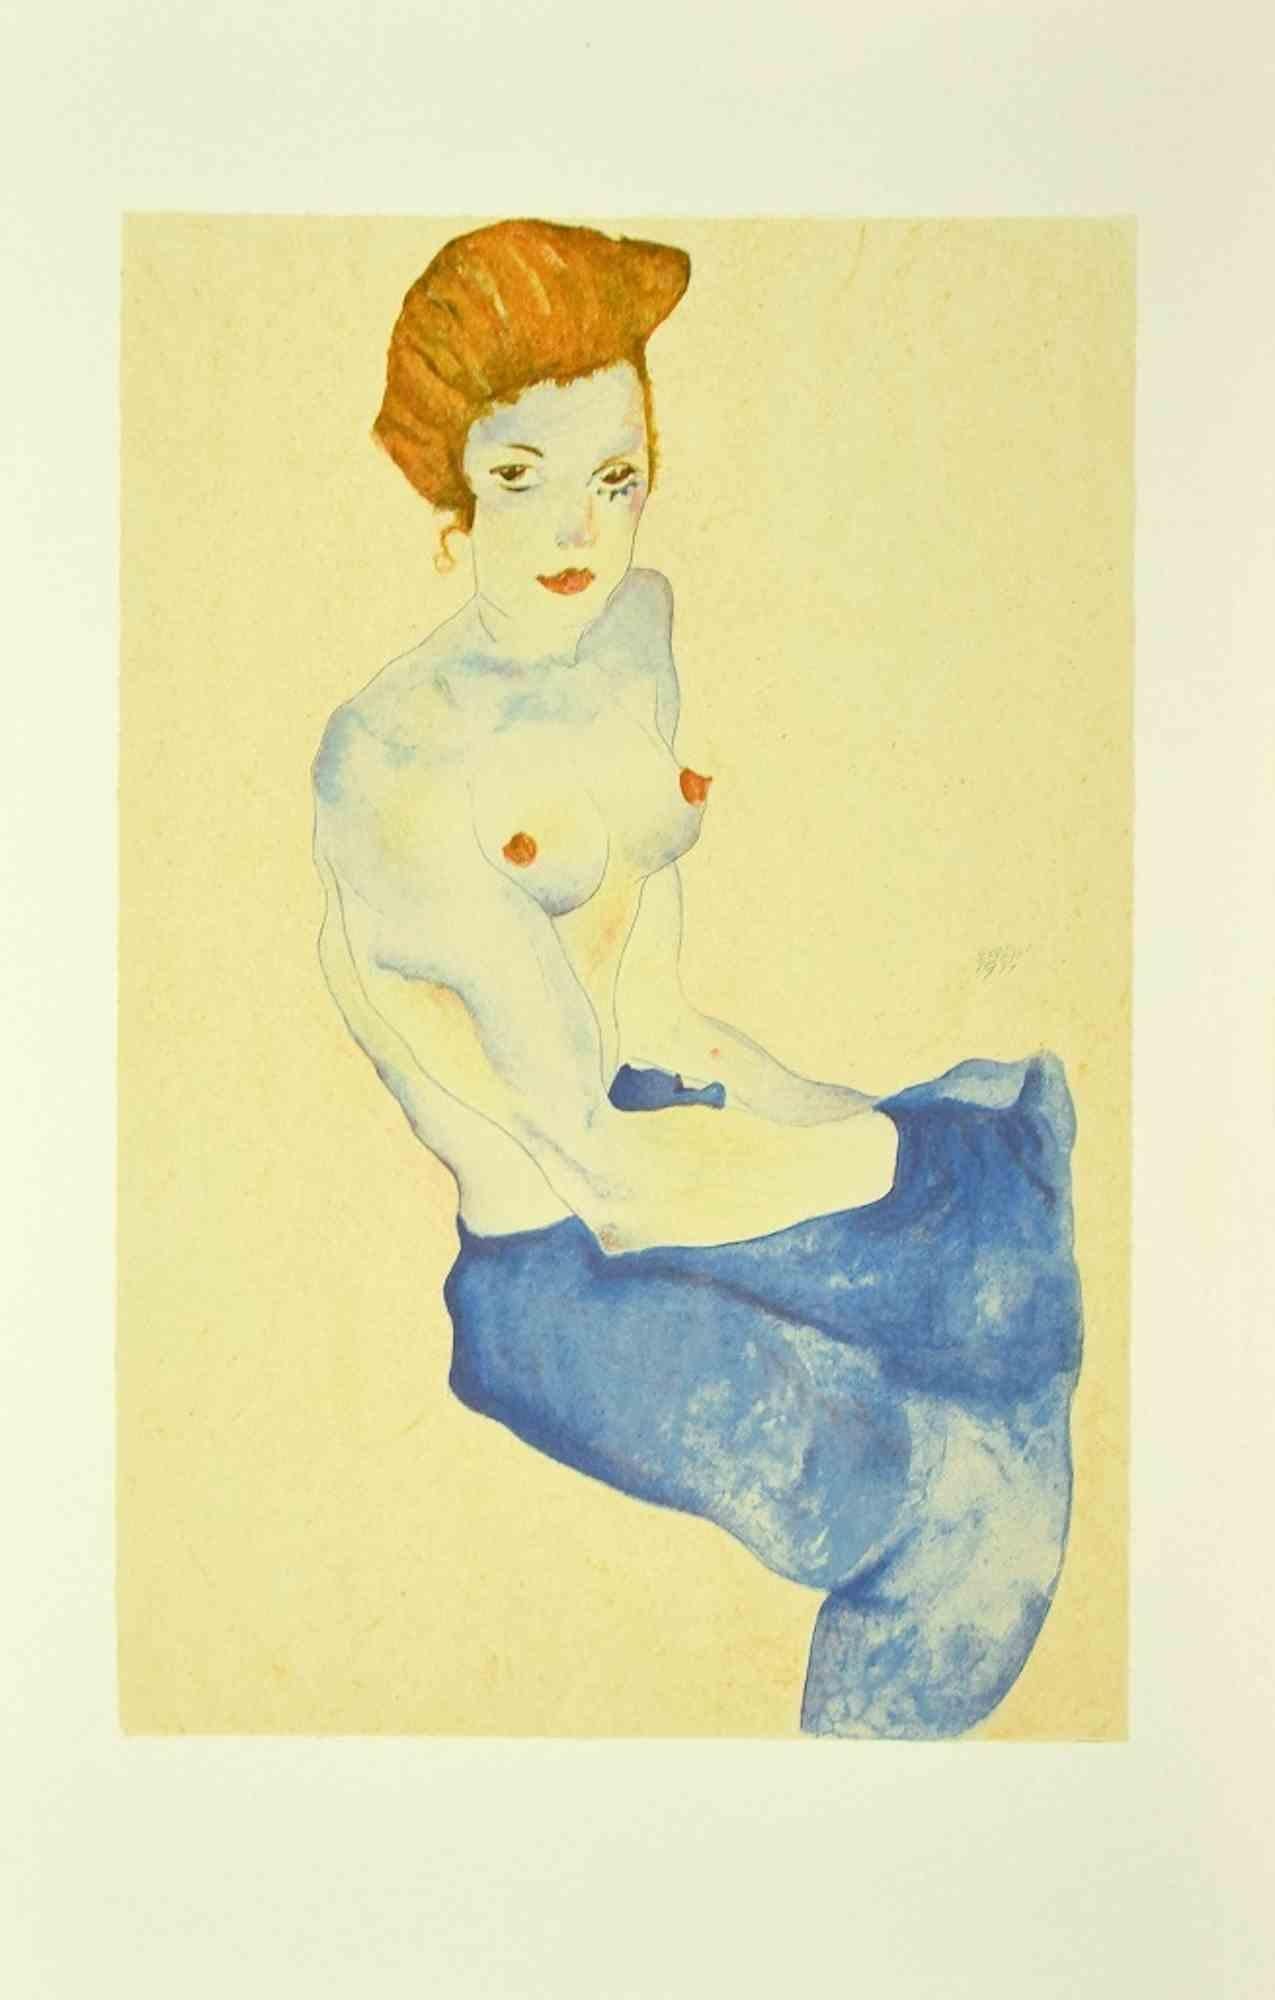 Egon Schiele Portrait Print - Woman With Blue Skirt - Lithograph - 2007